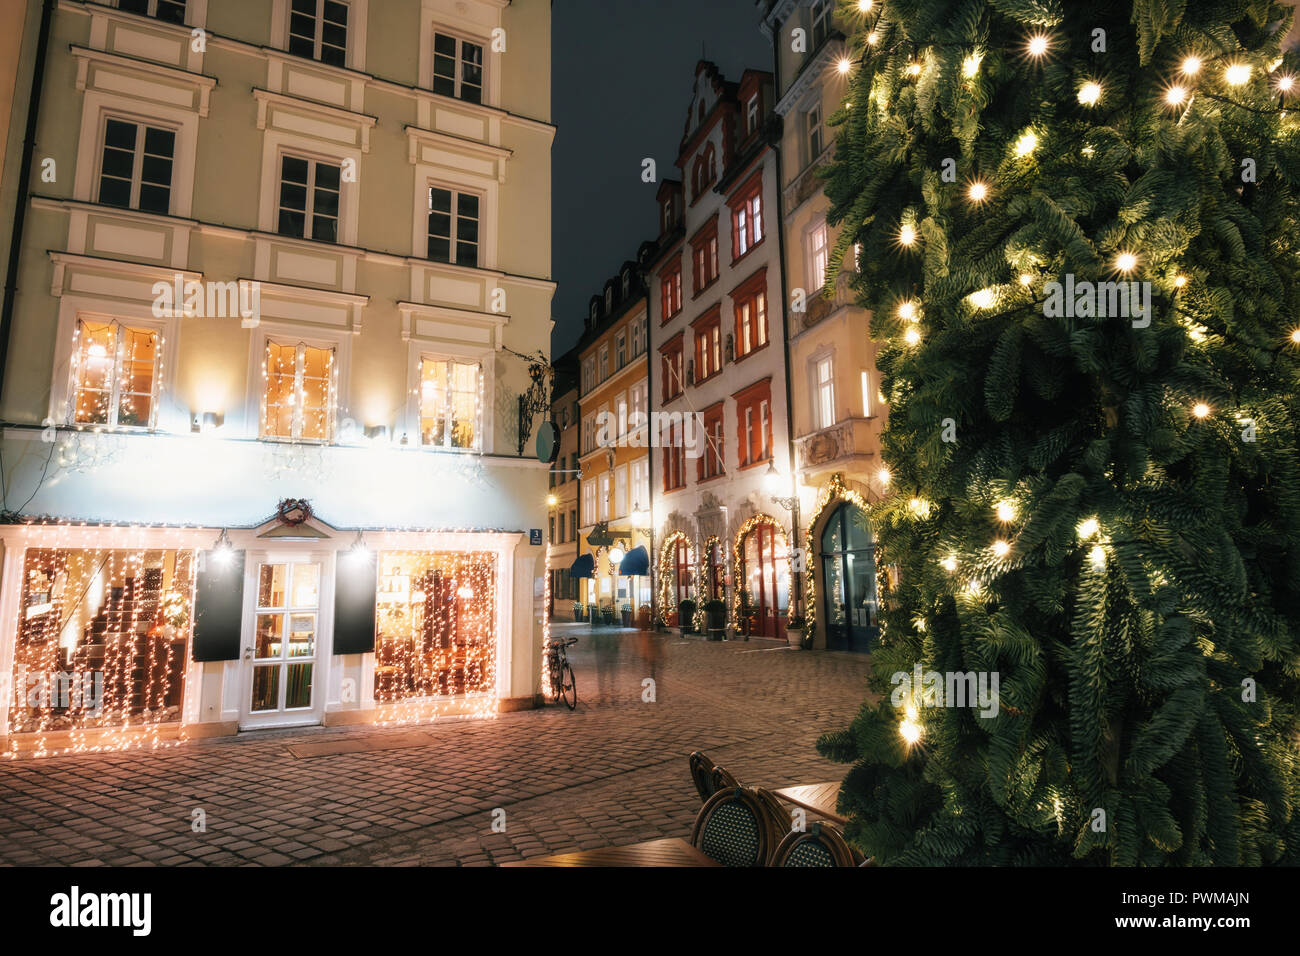 Verwischt die Menschen bewegt über beleuchtete Straße Platzl Square bei Nacht mit Weihnachtsbaum in München, Bayern, Deutschland Stockfoto